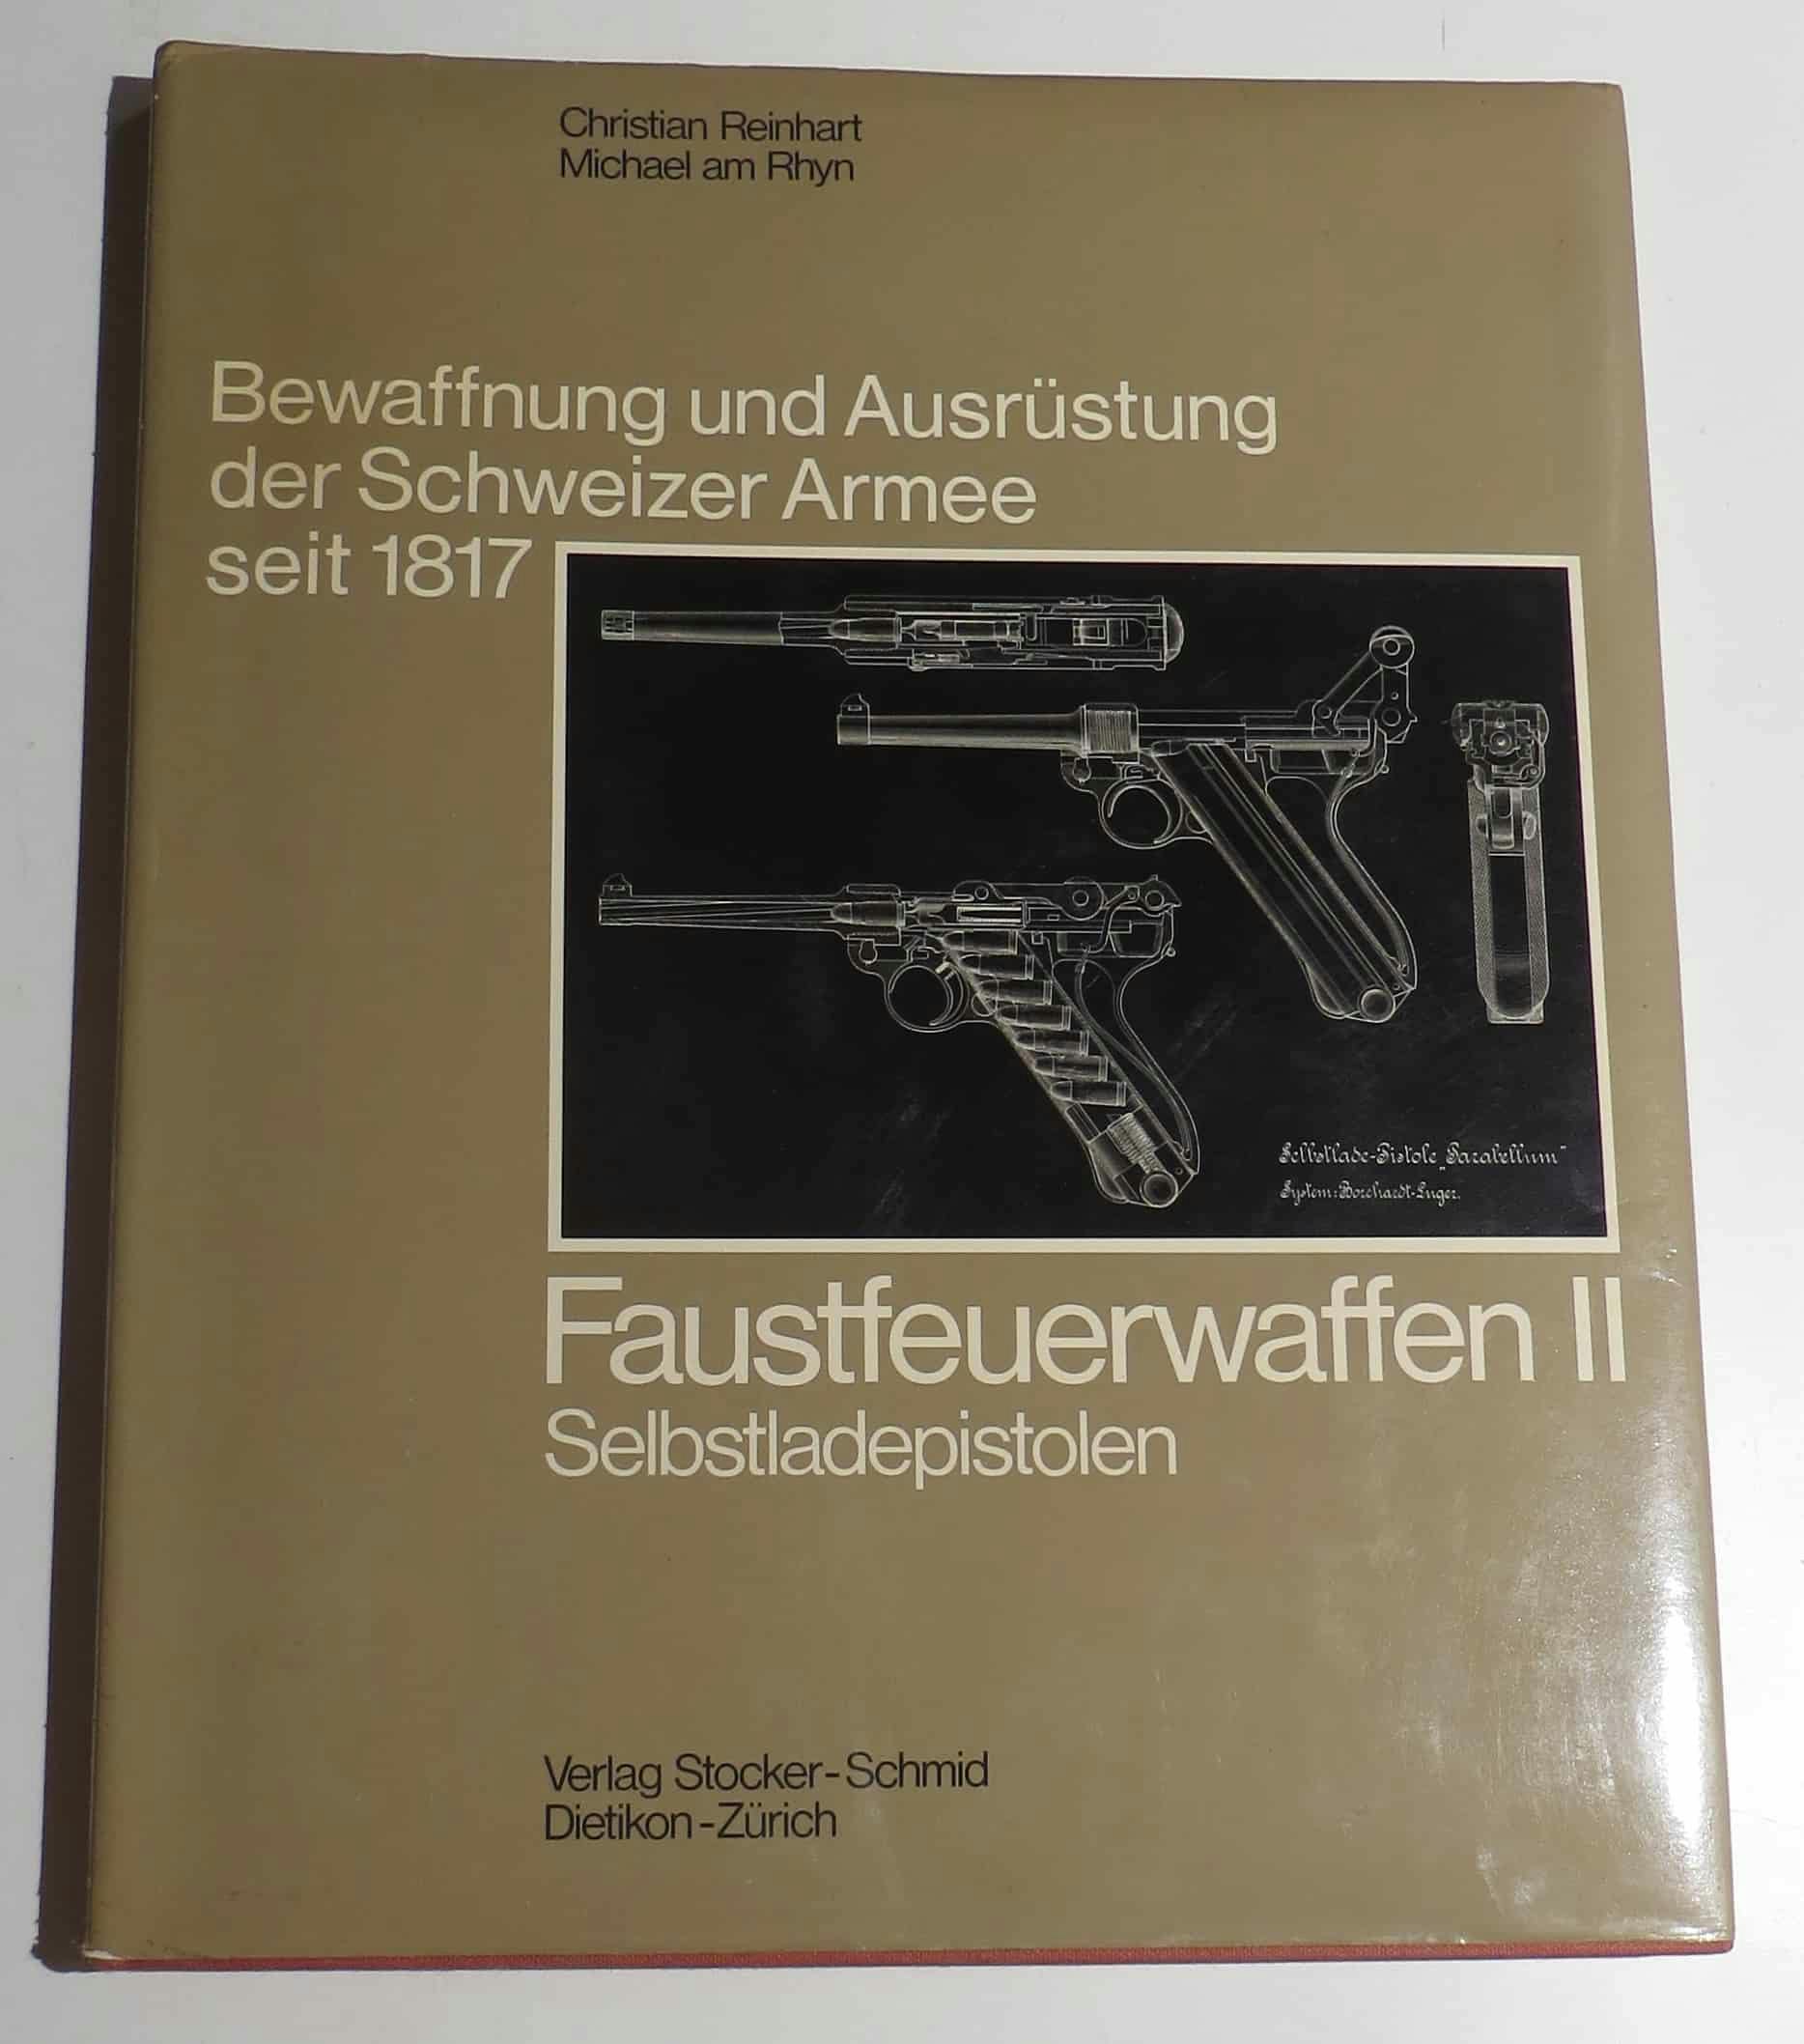 Das Titelbild zeigt Schnittzeichnungen von Georg Luger für die Pistole Modell 1900.